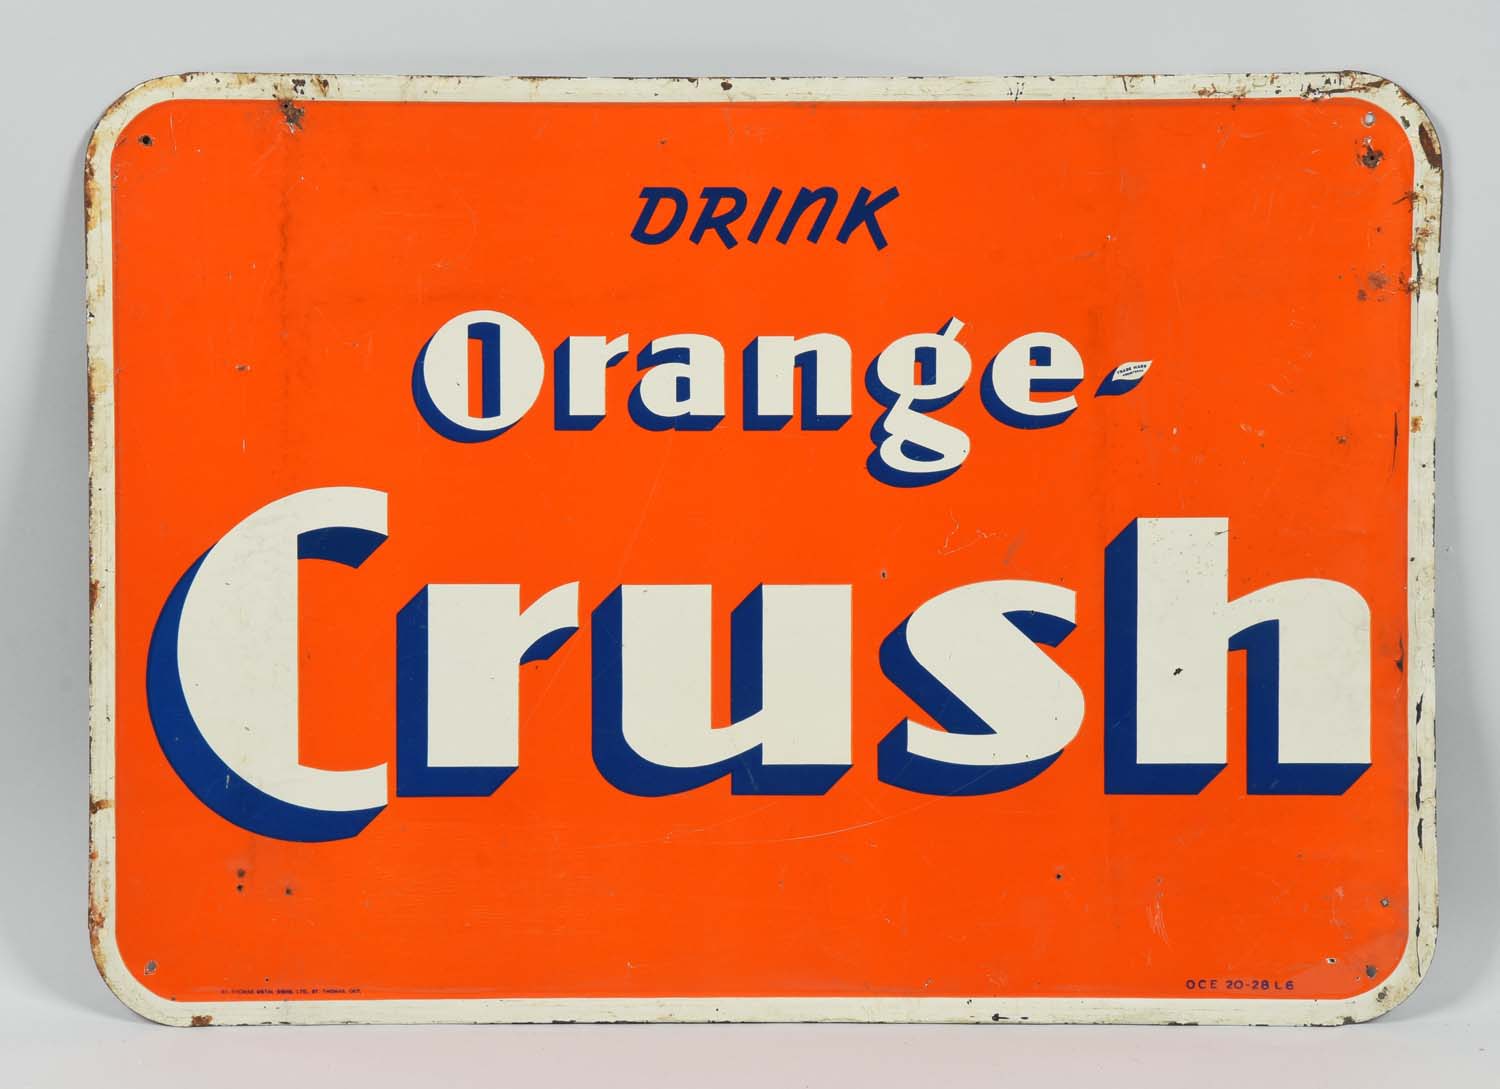 Orange-crush advertising tin sign. 